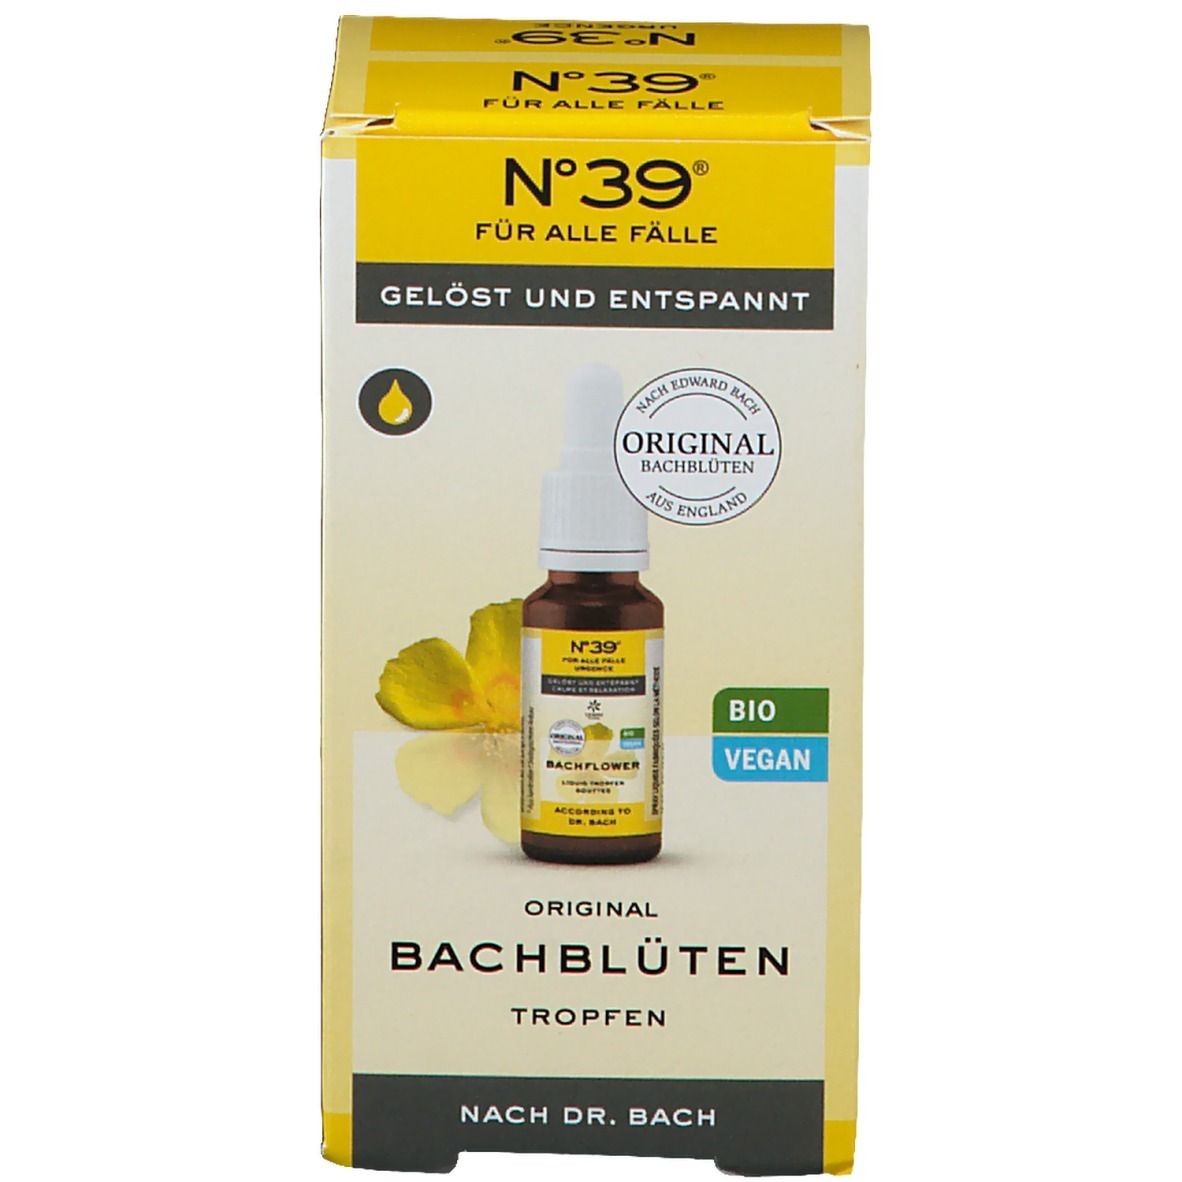 No. 39® Für alle Fälle Original Bachblüten Liquid Tropfen